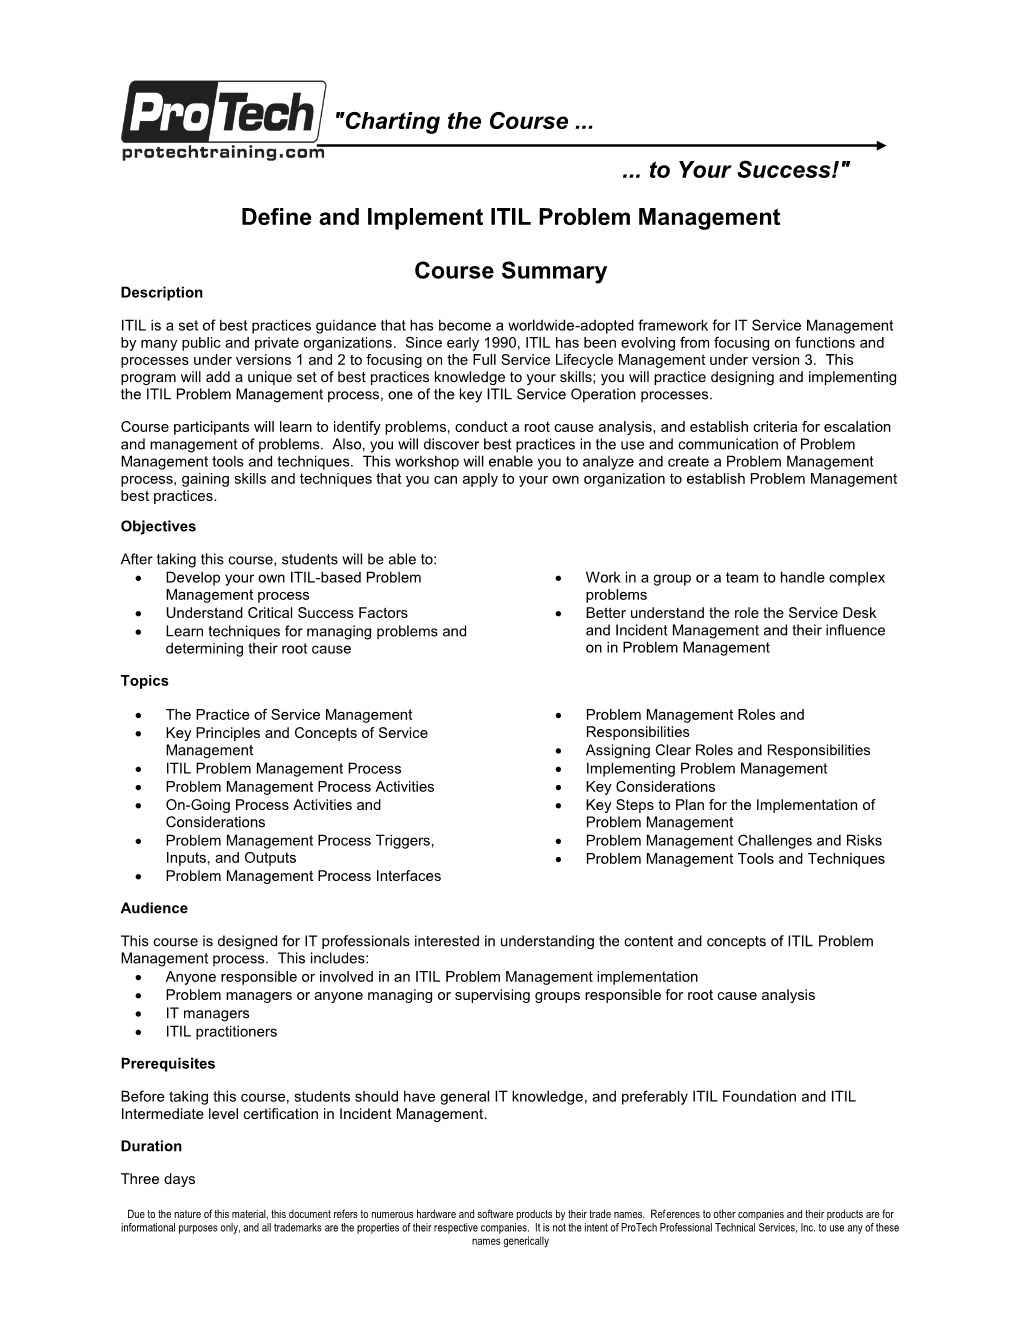 Define and Implement ITIL Problem Management